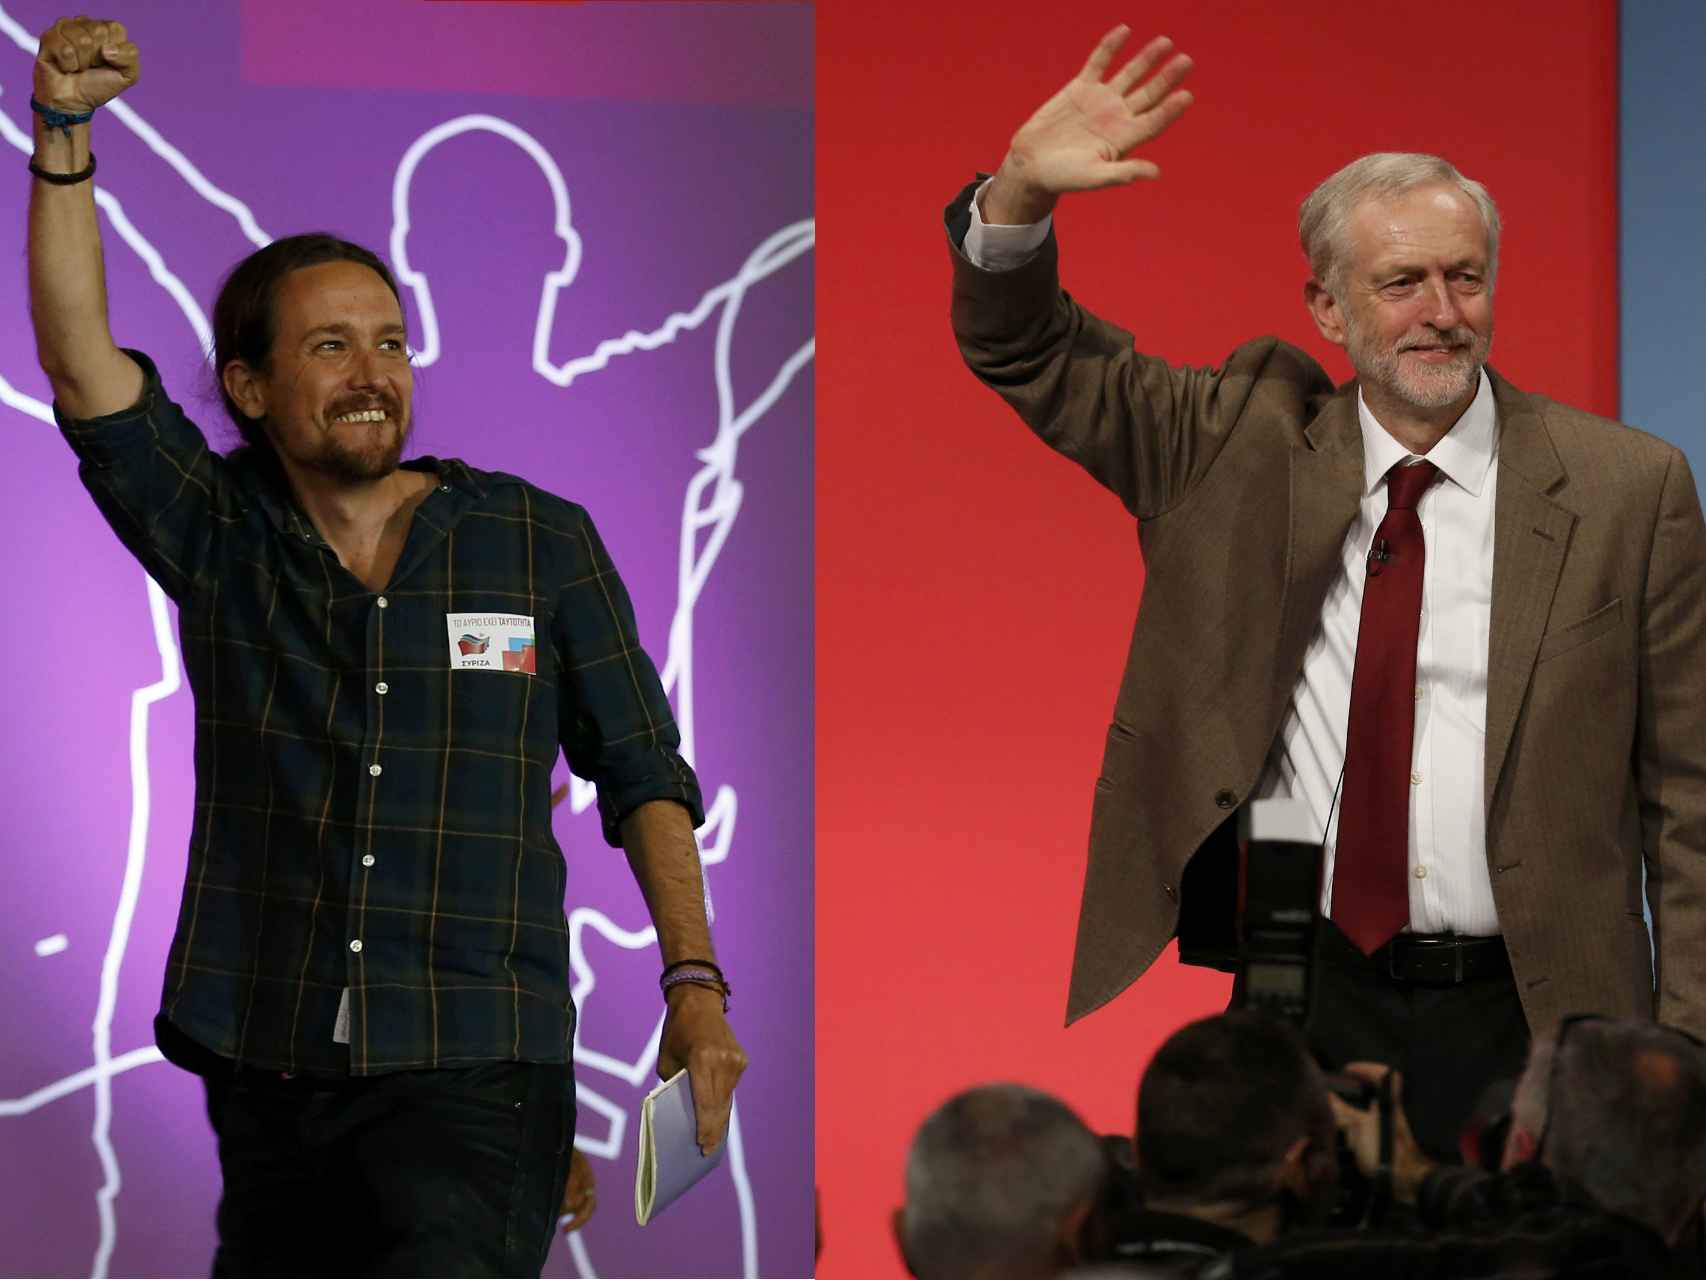 Montaje de imágenes del líder de Podemos, Pablo Iglesias, y el líder del Partido Laborista británico, Jeremy Corbyn.